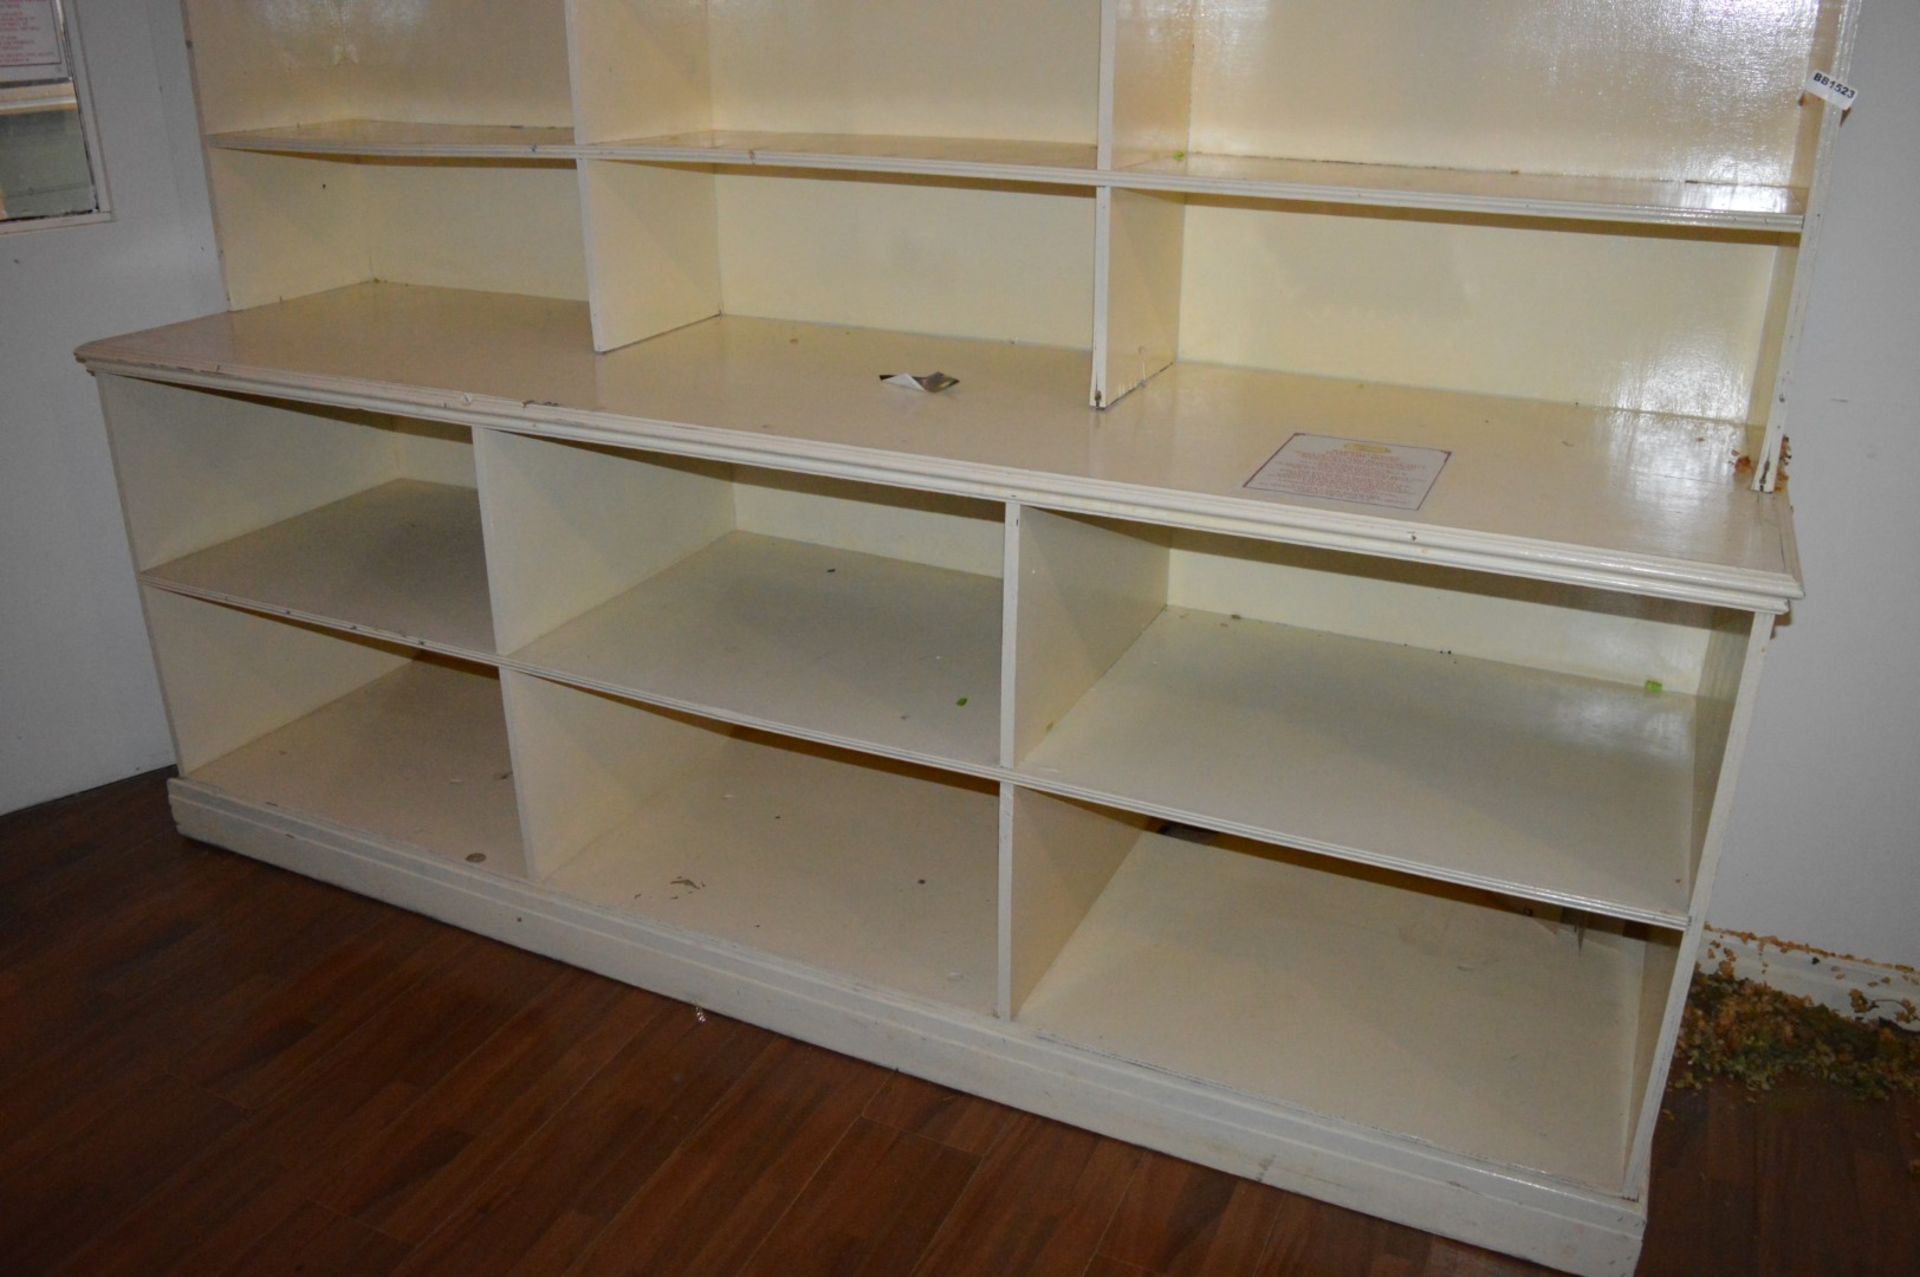 1 x Large Shelf Unit With Glass Shelves - H198 x W247 x D64 cms - Ref BB1523 GF - CL351 - - Image 2 of 3